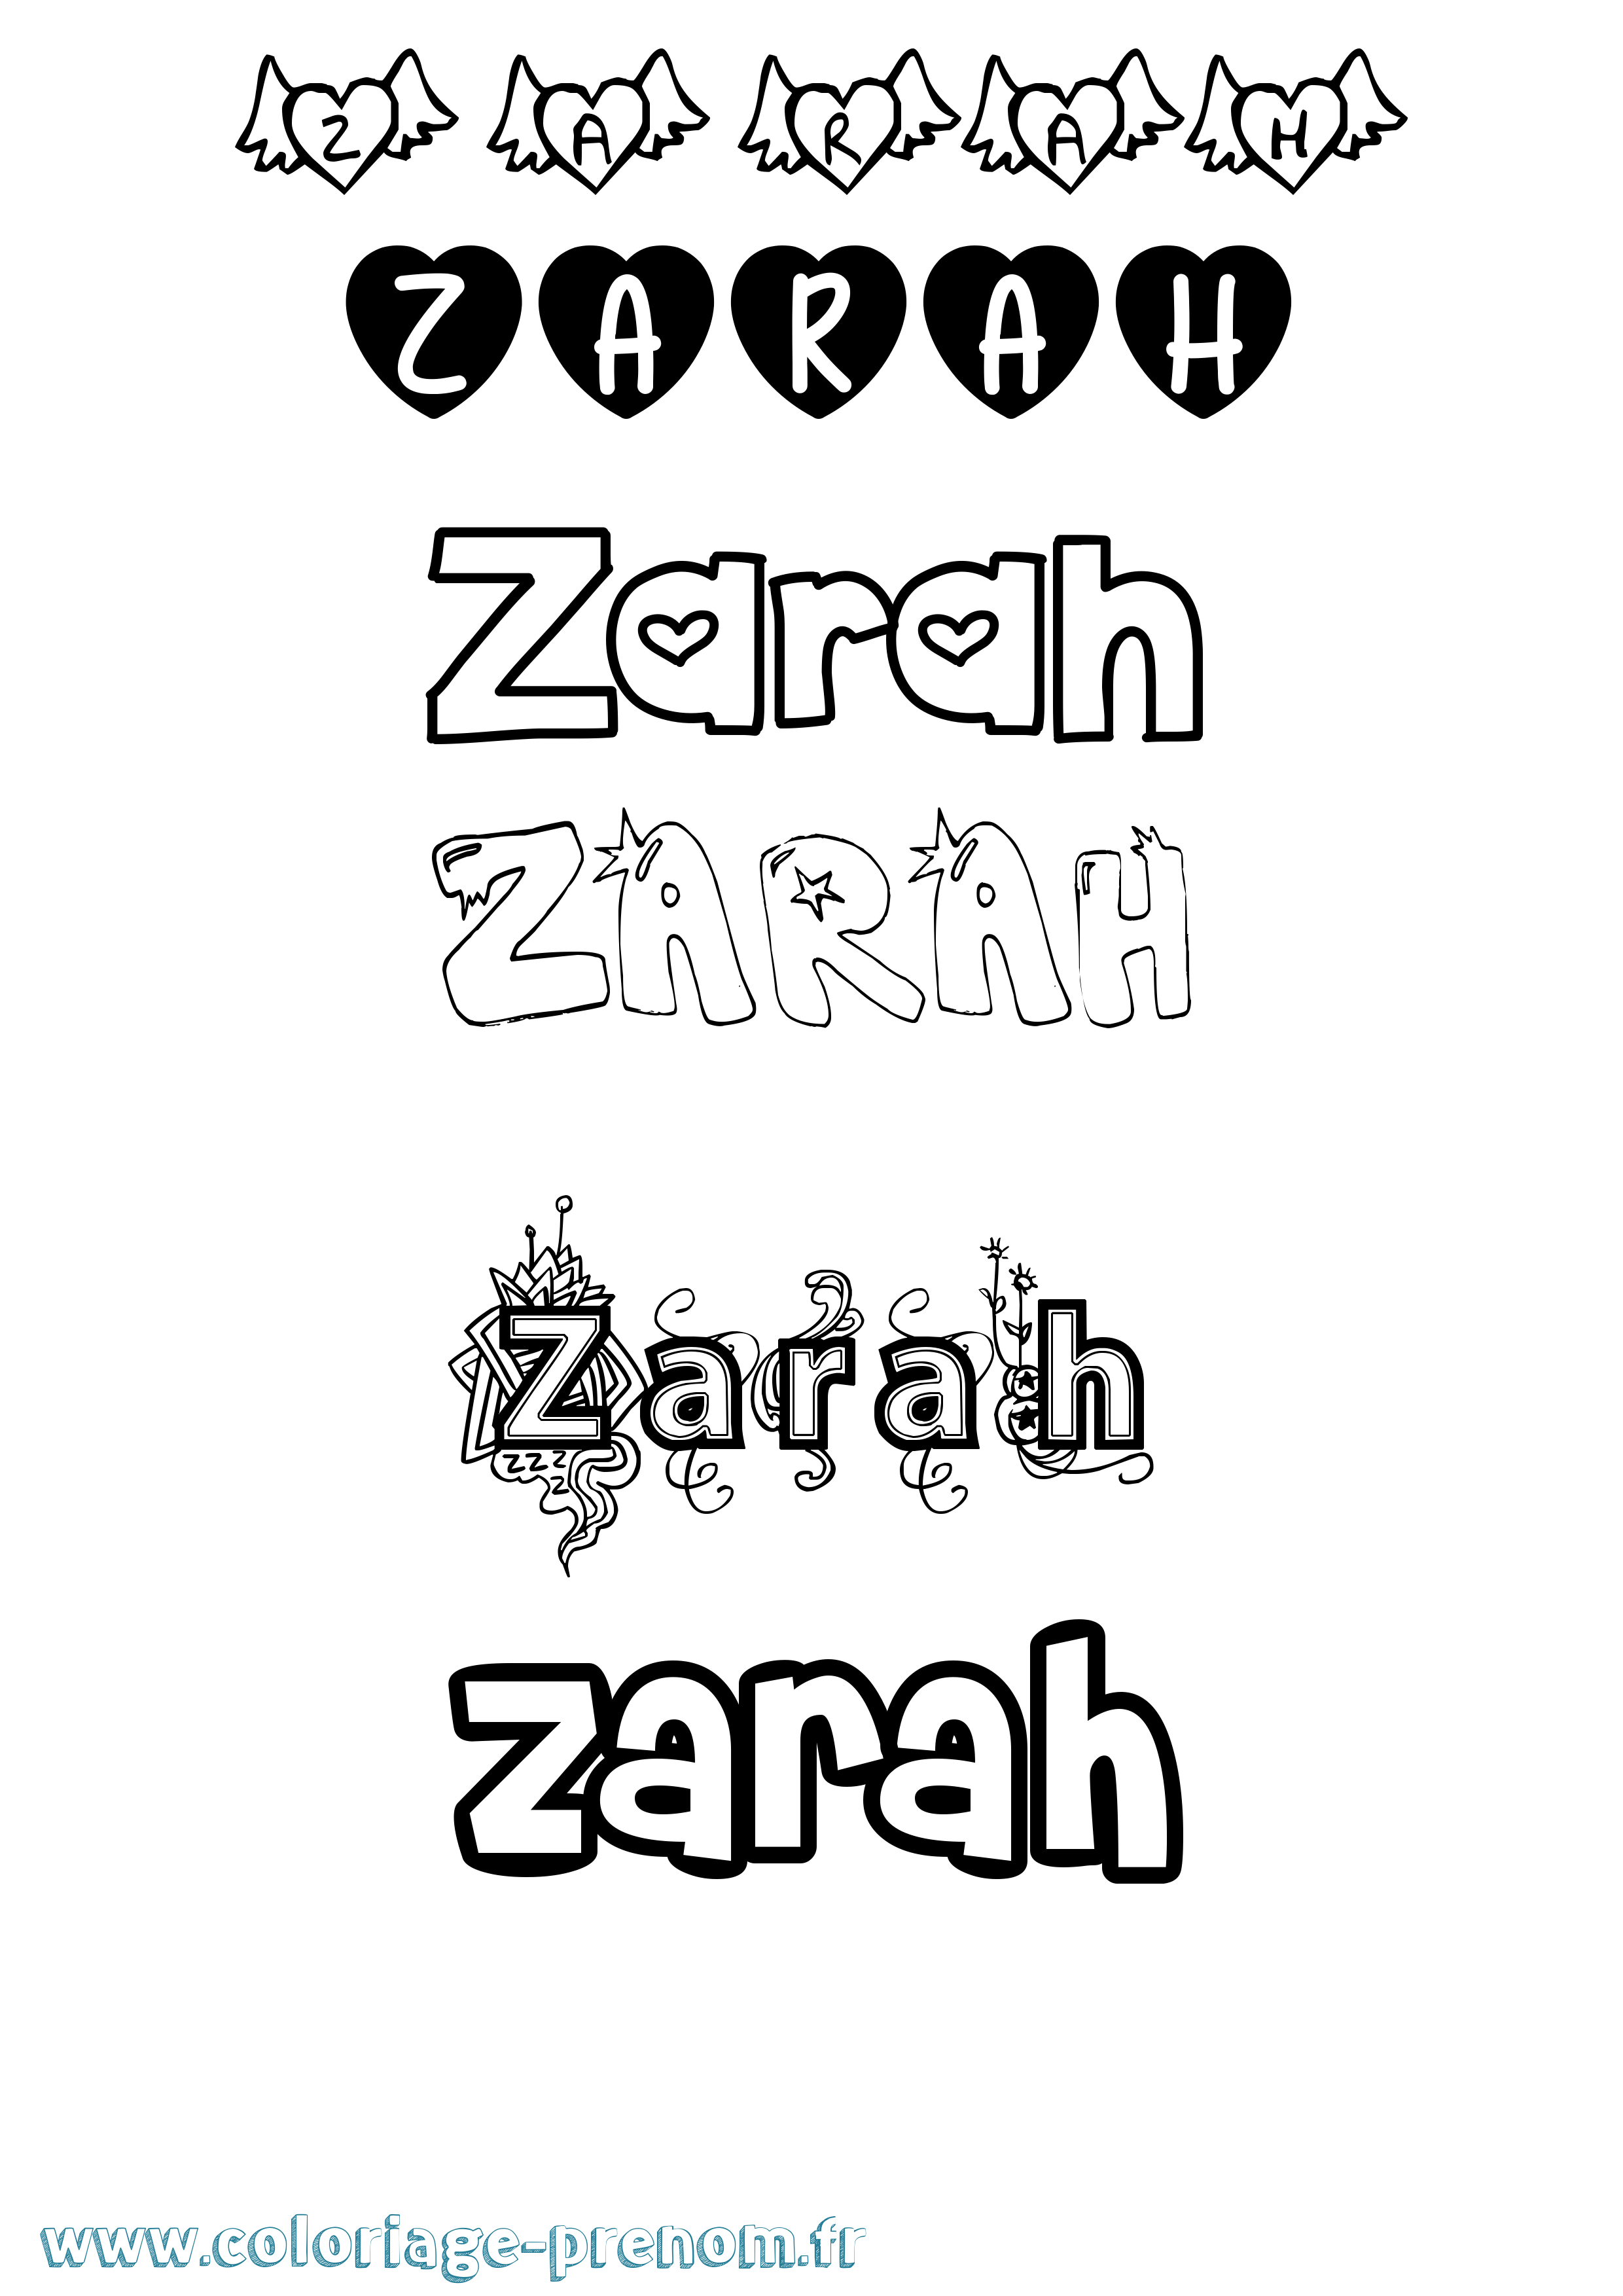 Coloriage prénom Zarah Girly